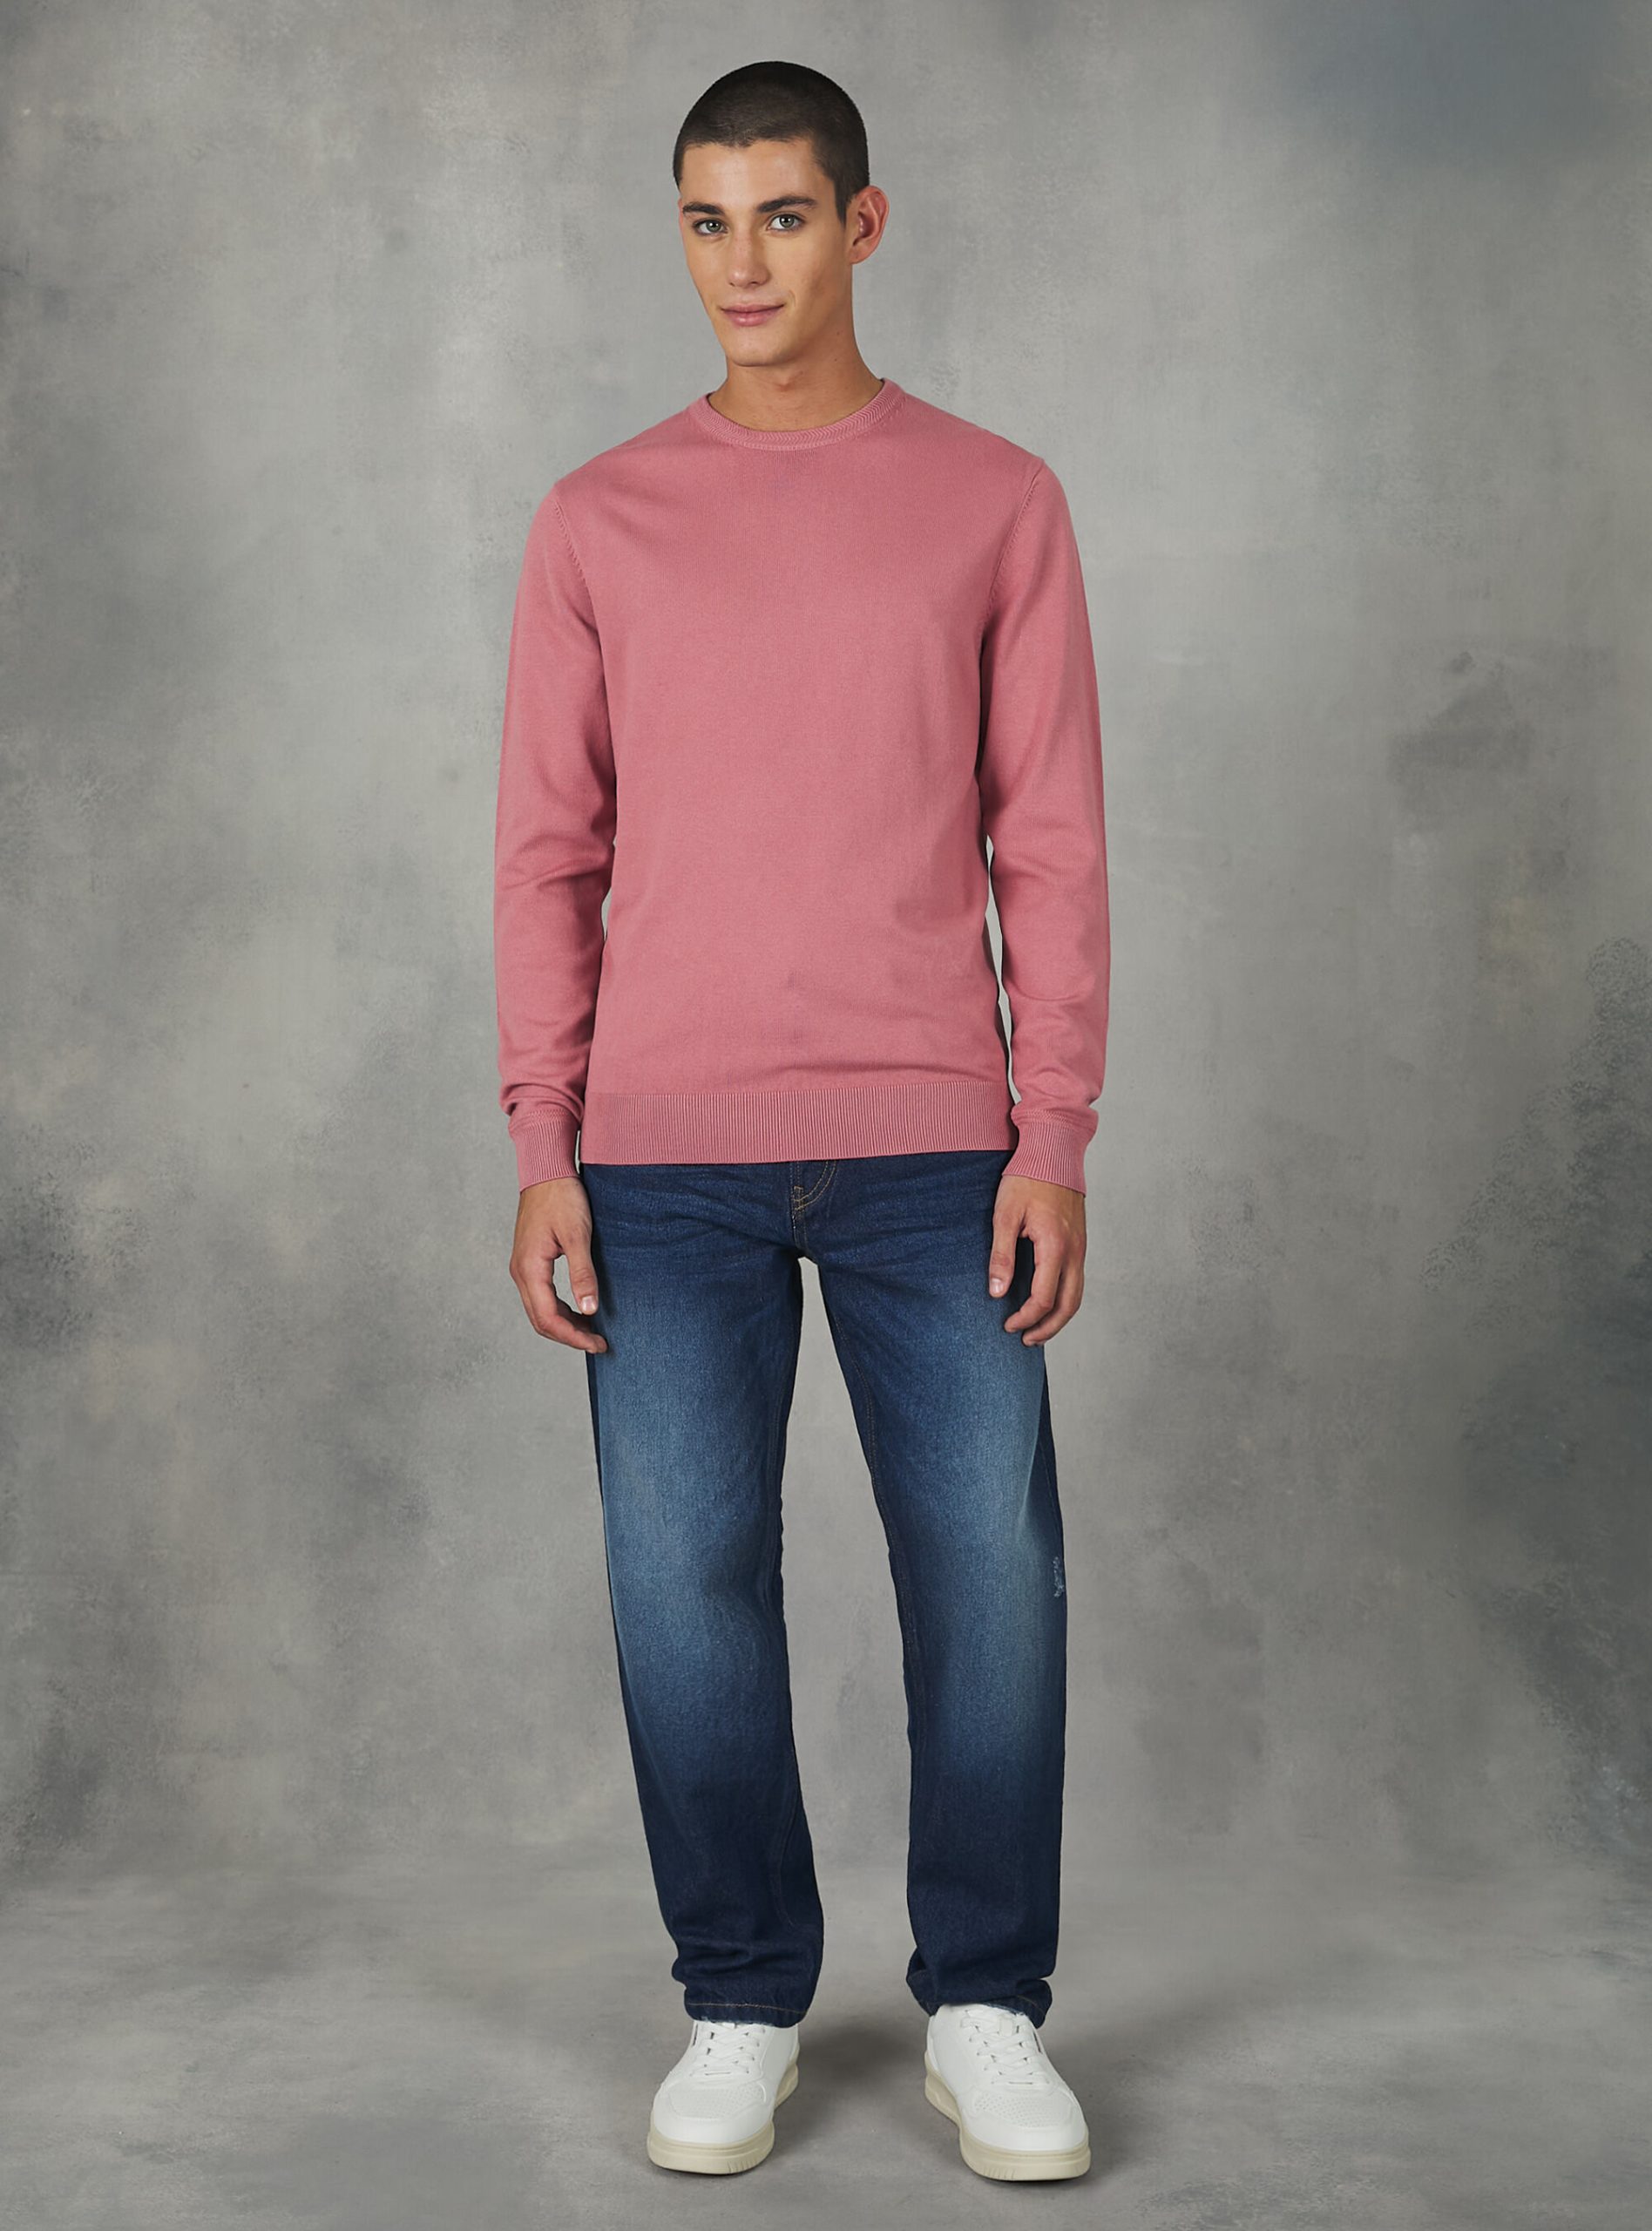 Nachschub Round-Neck Pullover Made Of Sustainable Viscose Ecovero Strickwaren Pk2 Pink Medium Männer Alcott – 2